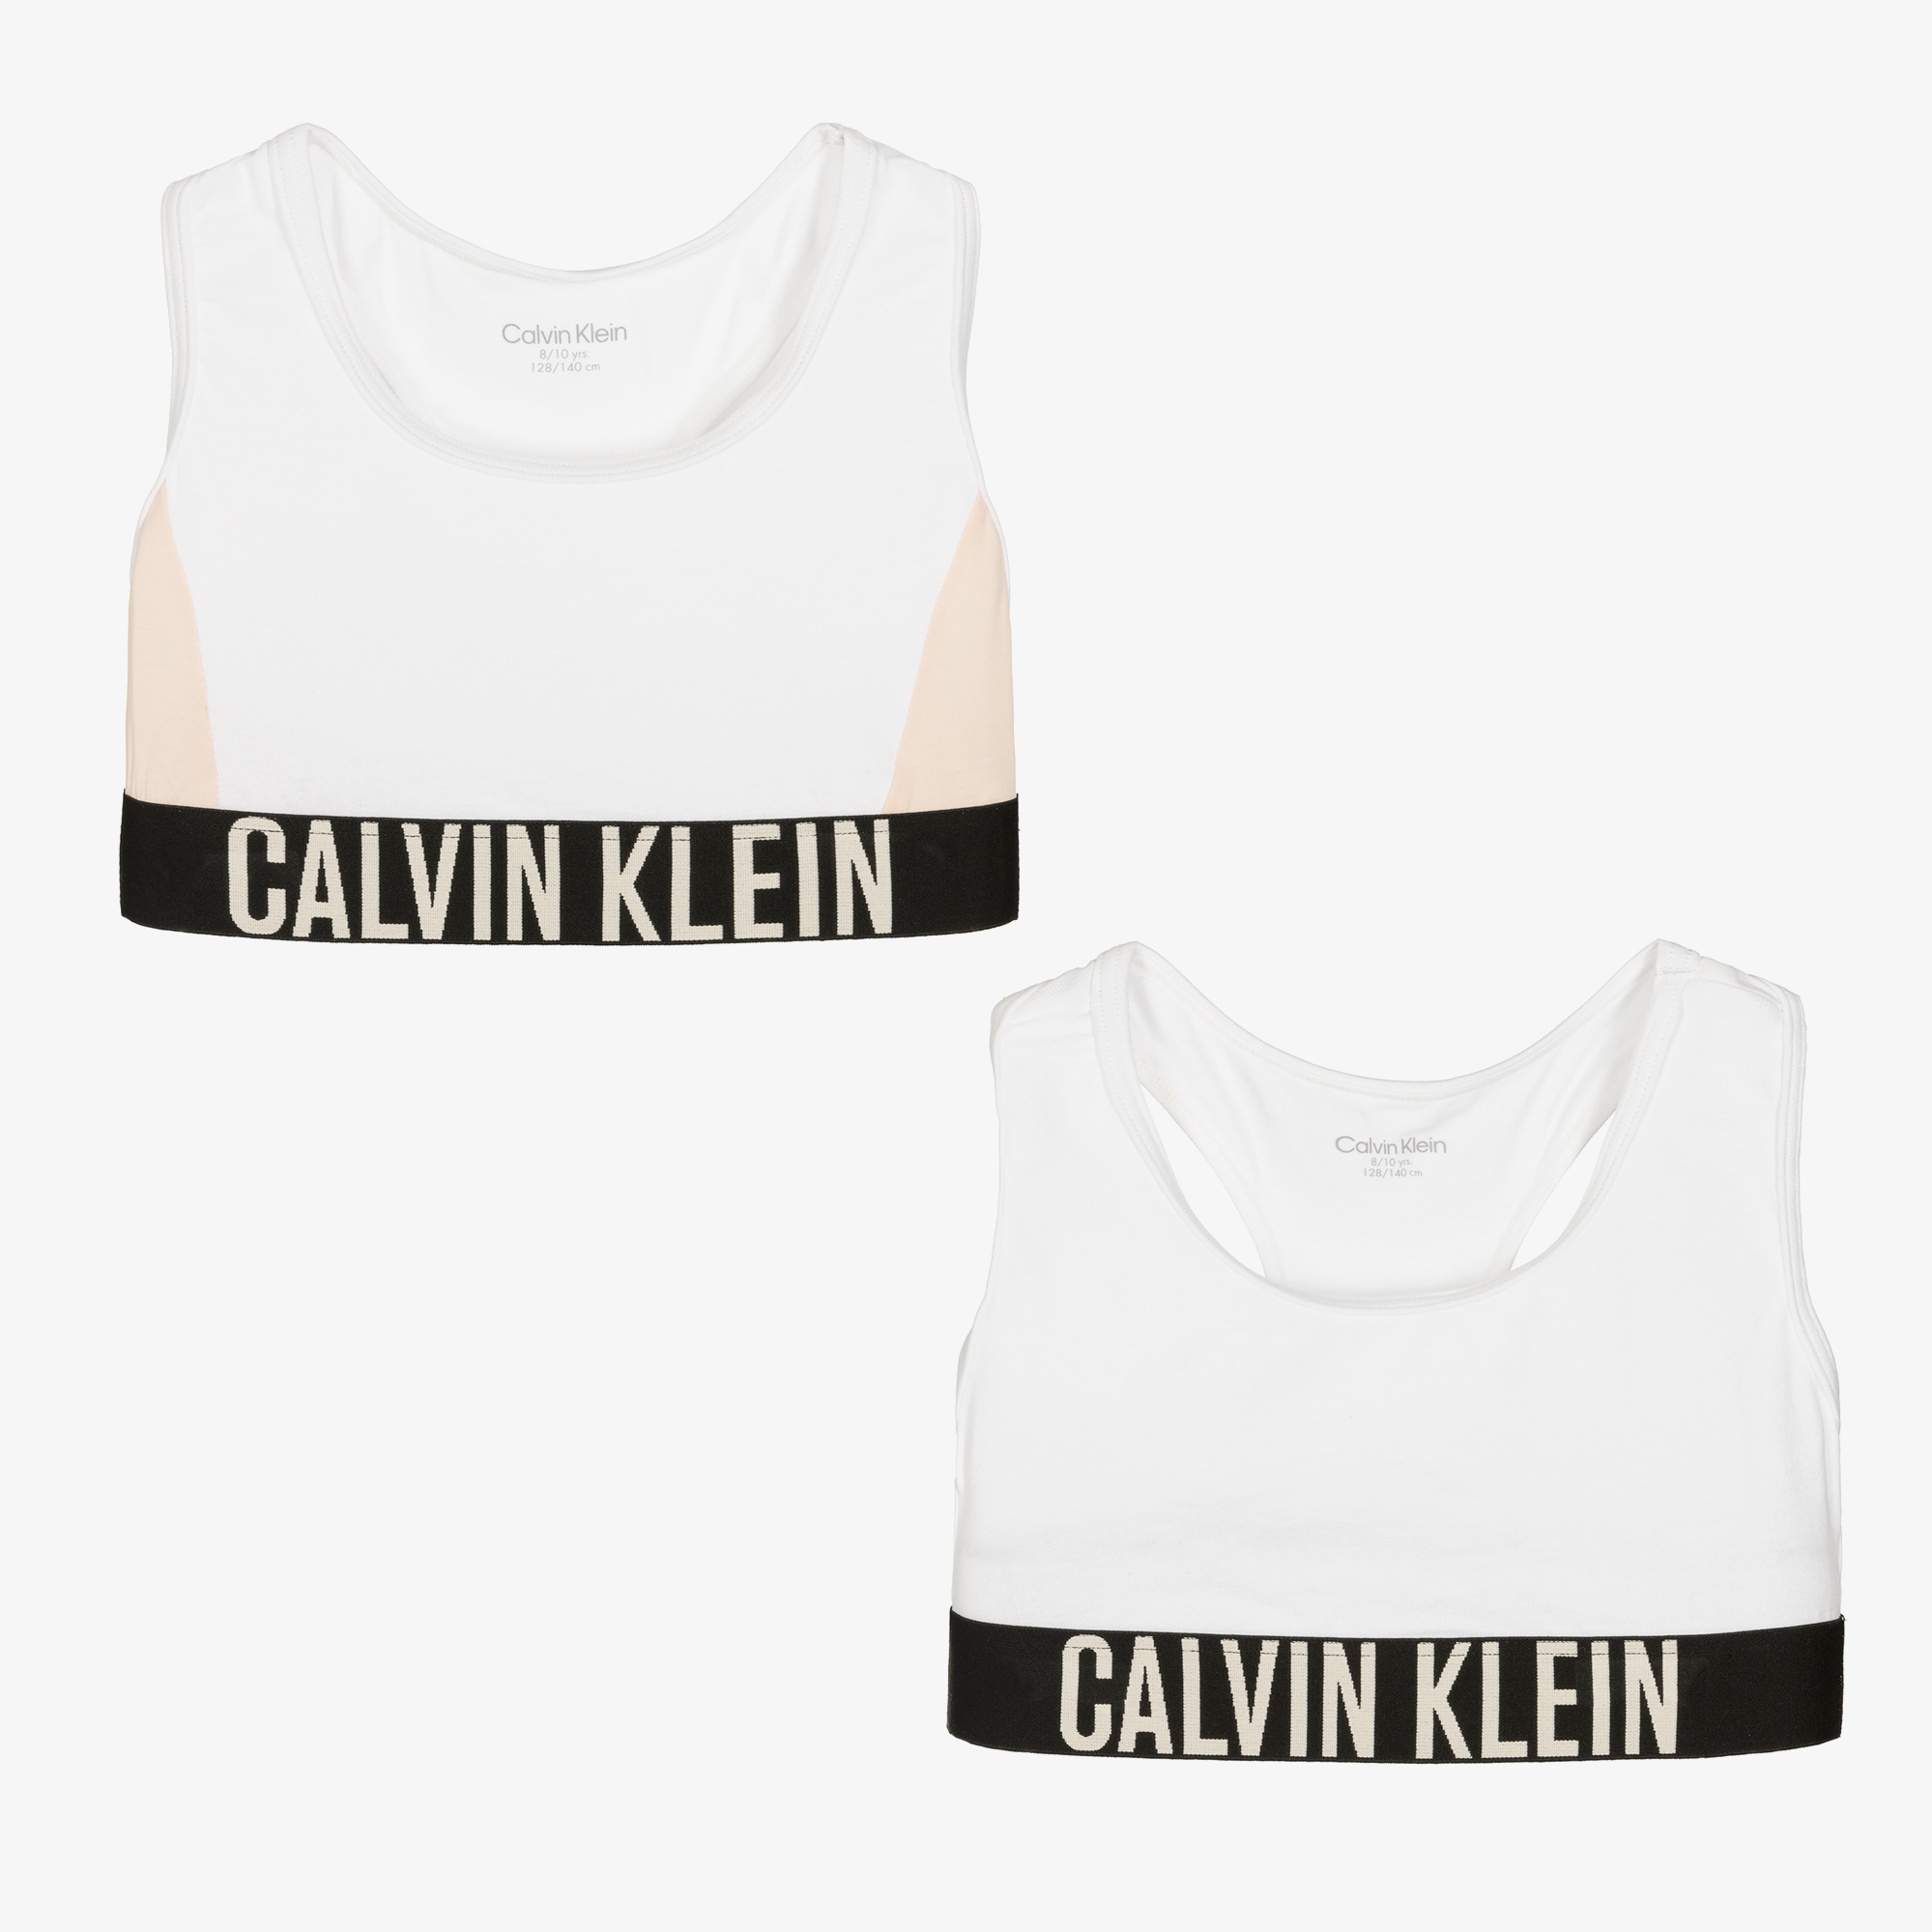 Calvin Klein Girls White Cotton Bra Tops (2 Pack)